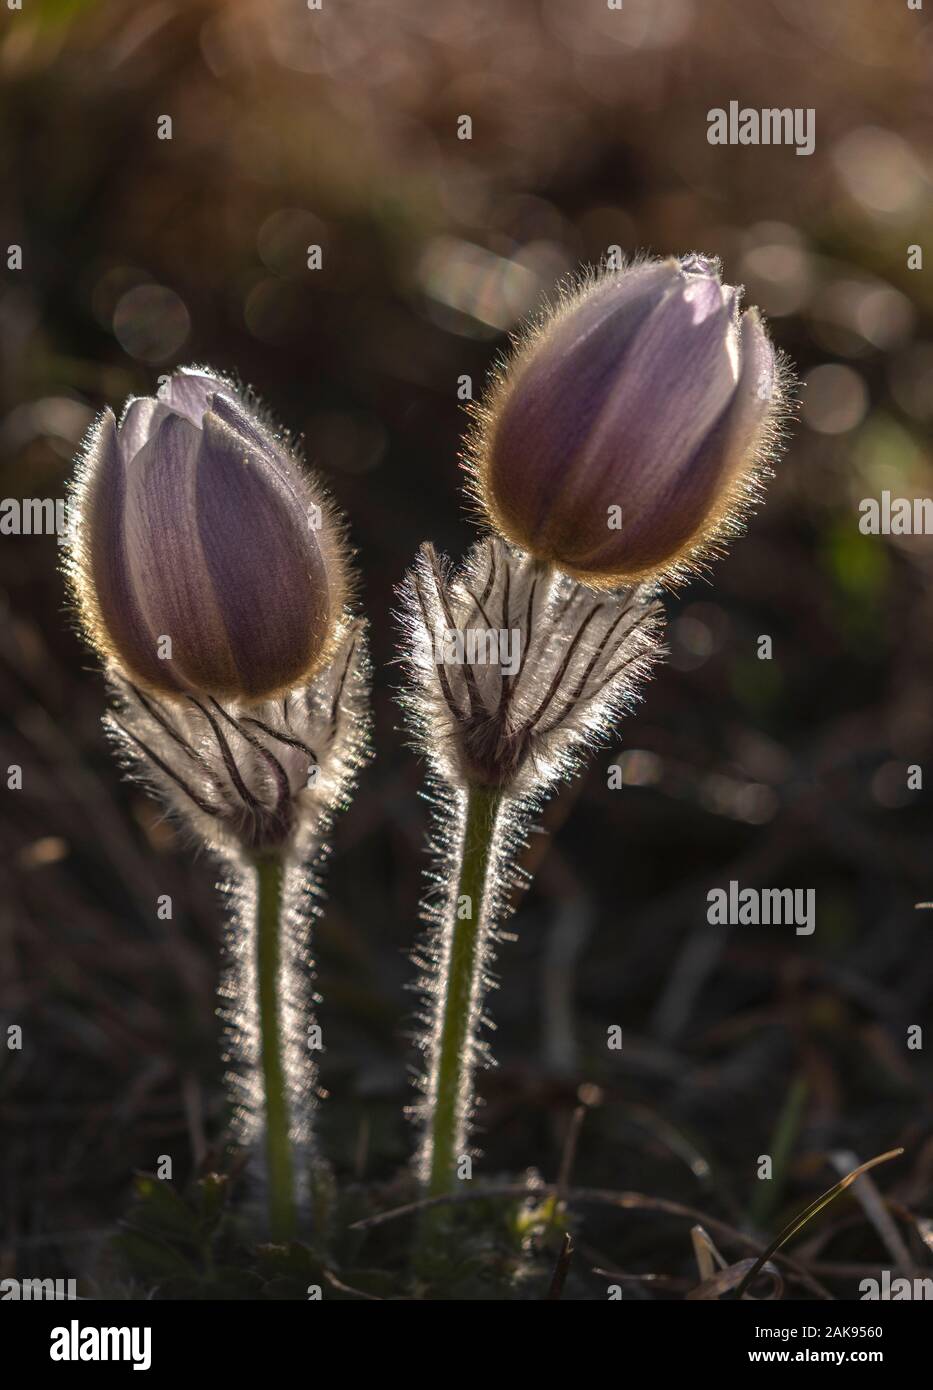 Printemps pasqueflower Pulsatilla vernalis en fleurs, à l'alpage, Alpes Françaises. Lumière du soir. Banque D'Images